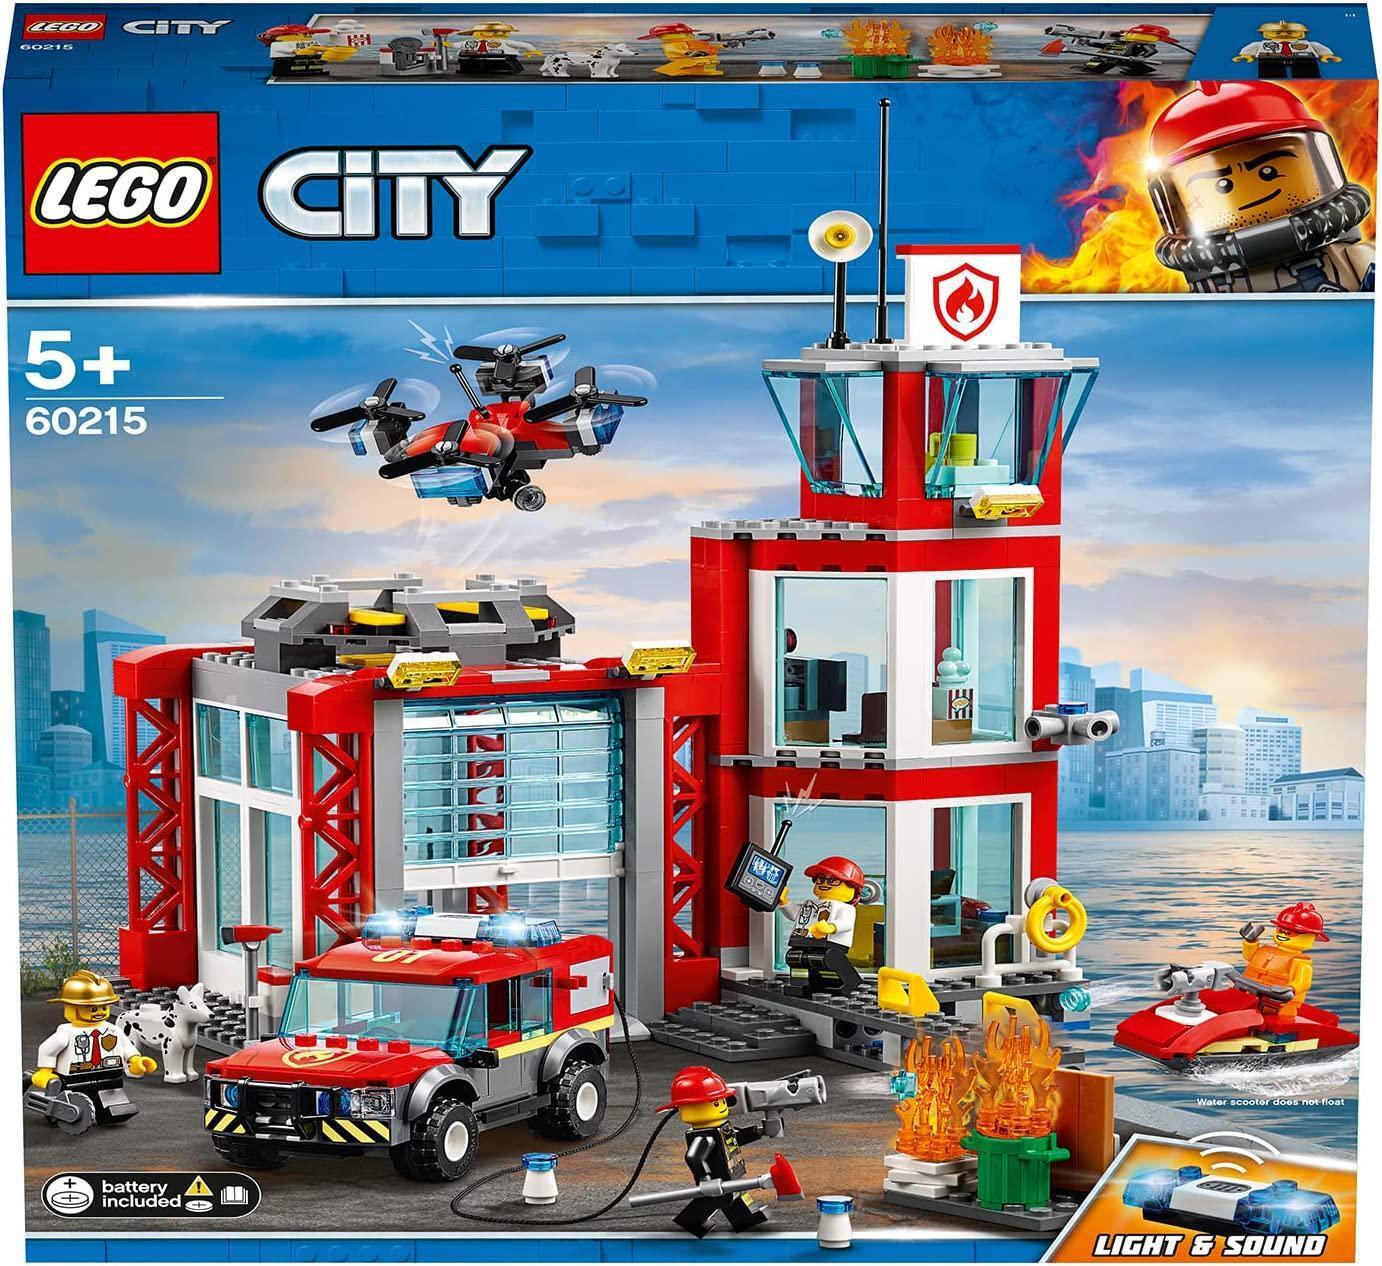 Feuerwehr-Station Lego City, 509 Teile, ab 5 Jahren